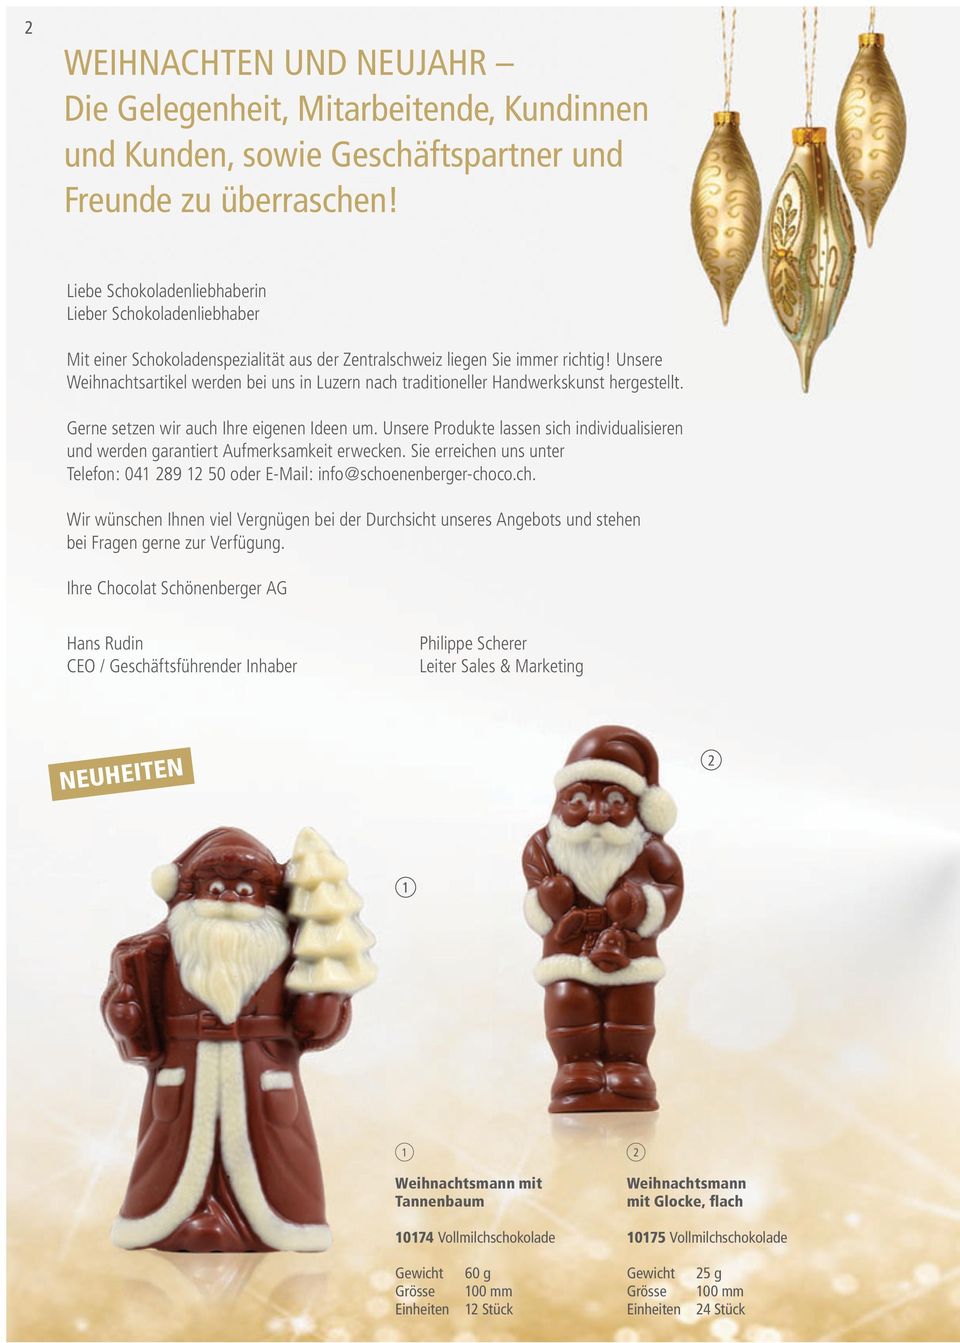 Unsere Weihnachtsartikel werden bei uns in Luzern nach traditioneller Handwerkskunst hergestellt. Gerne setzen wir auch Ihre eigenen Ideen um.